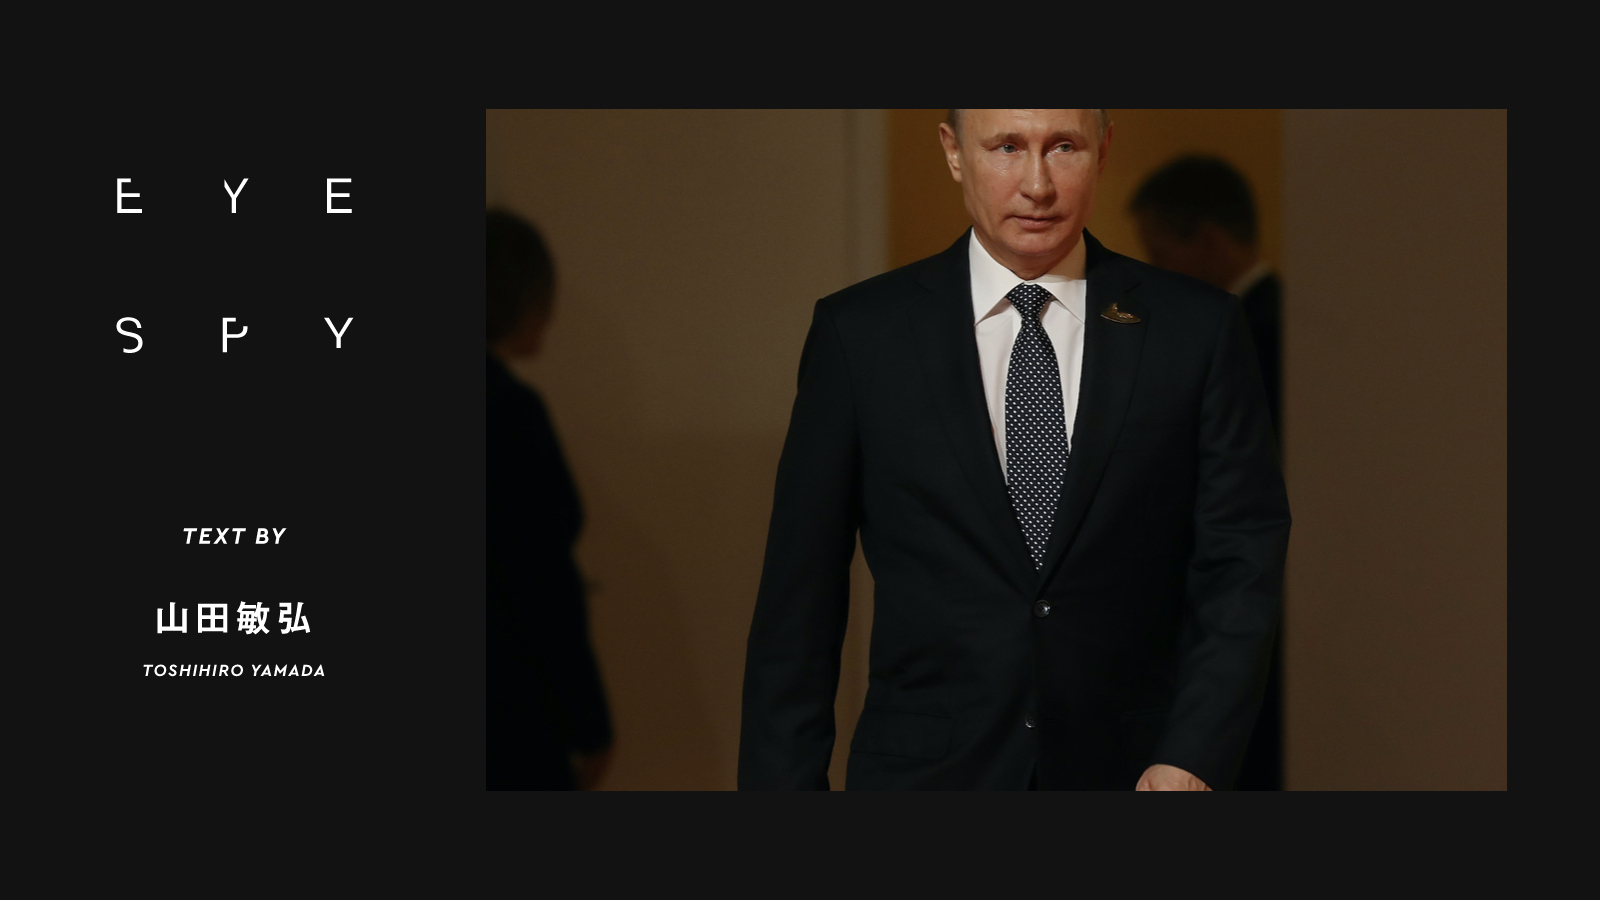 プーチンに「ガセネタ」を伝えていたロシアFSB幹部「自宅軟禁騒動」の真相 | 【Eye Spy】大統領の「被害妄想」は増すばかりか